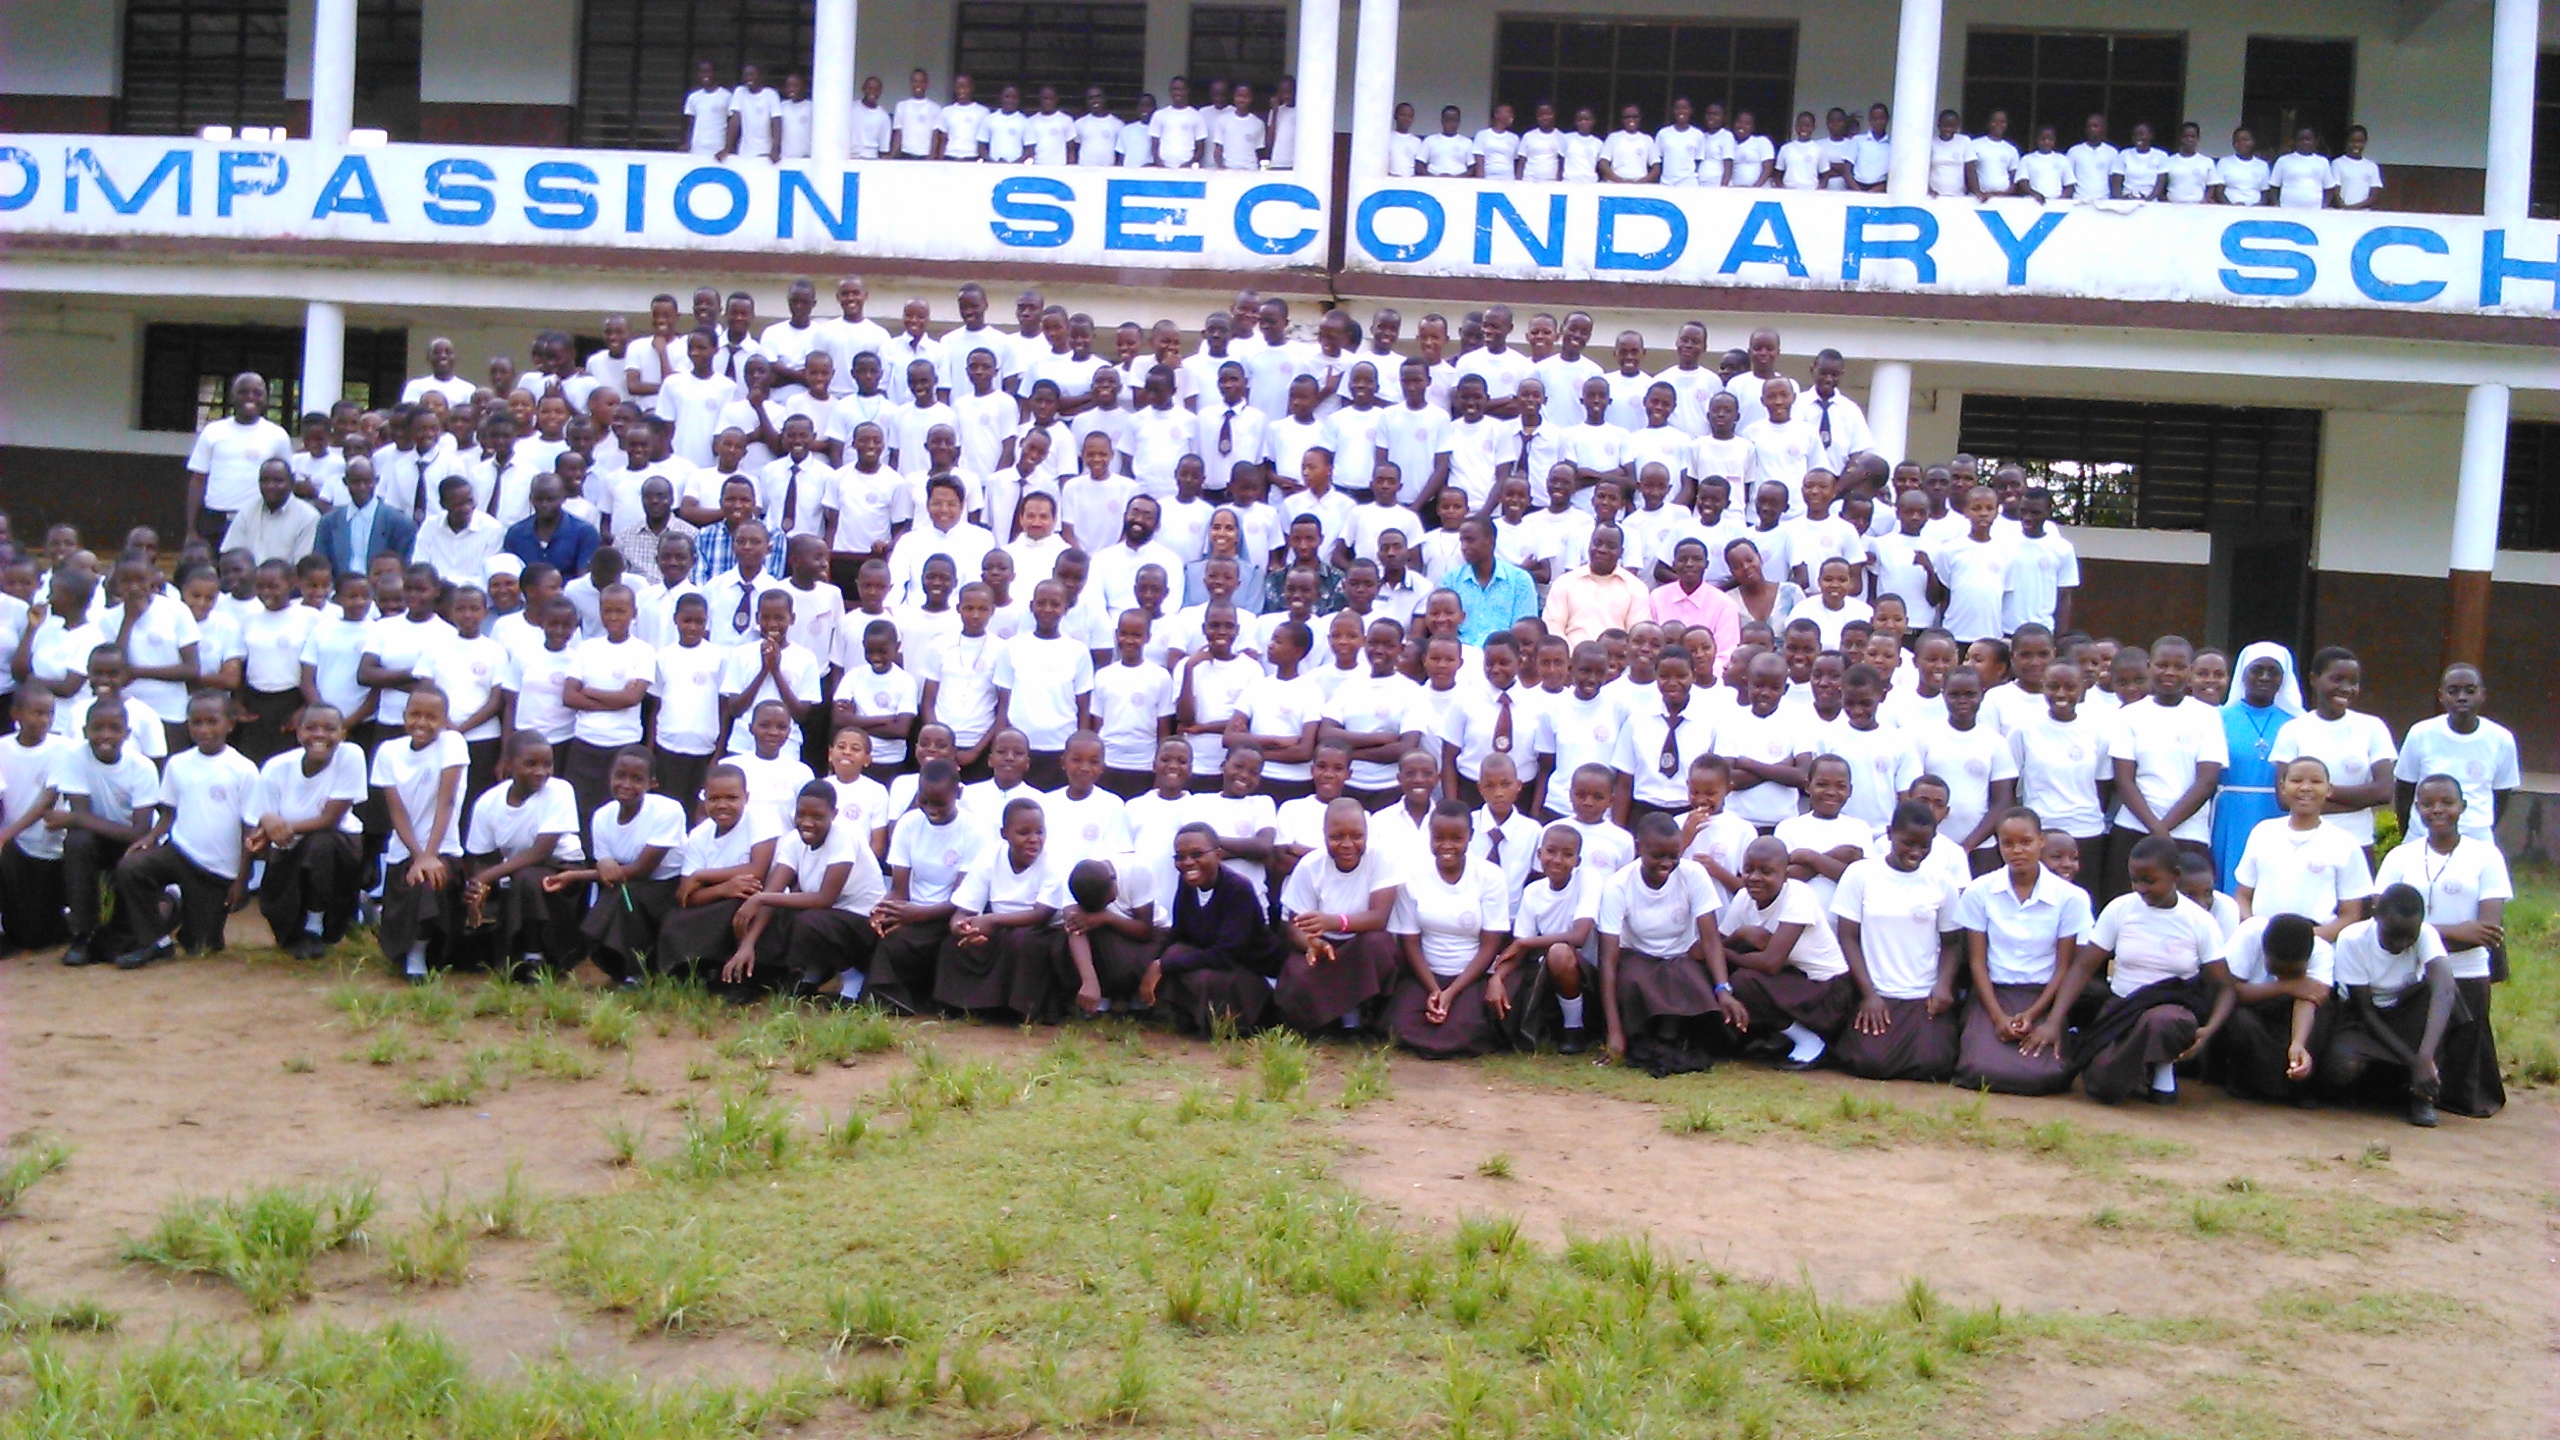 Scuola Secondaria Assumption - Gli studenti e insegnati a Msolwa Ujaama nella diocesi di Ifakkara. Tanzania